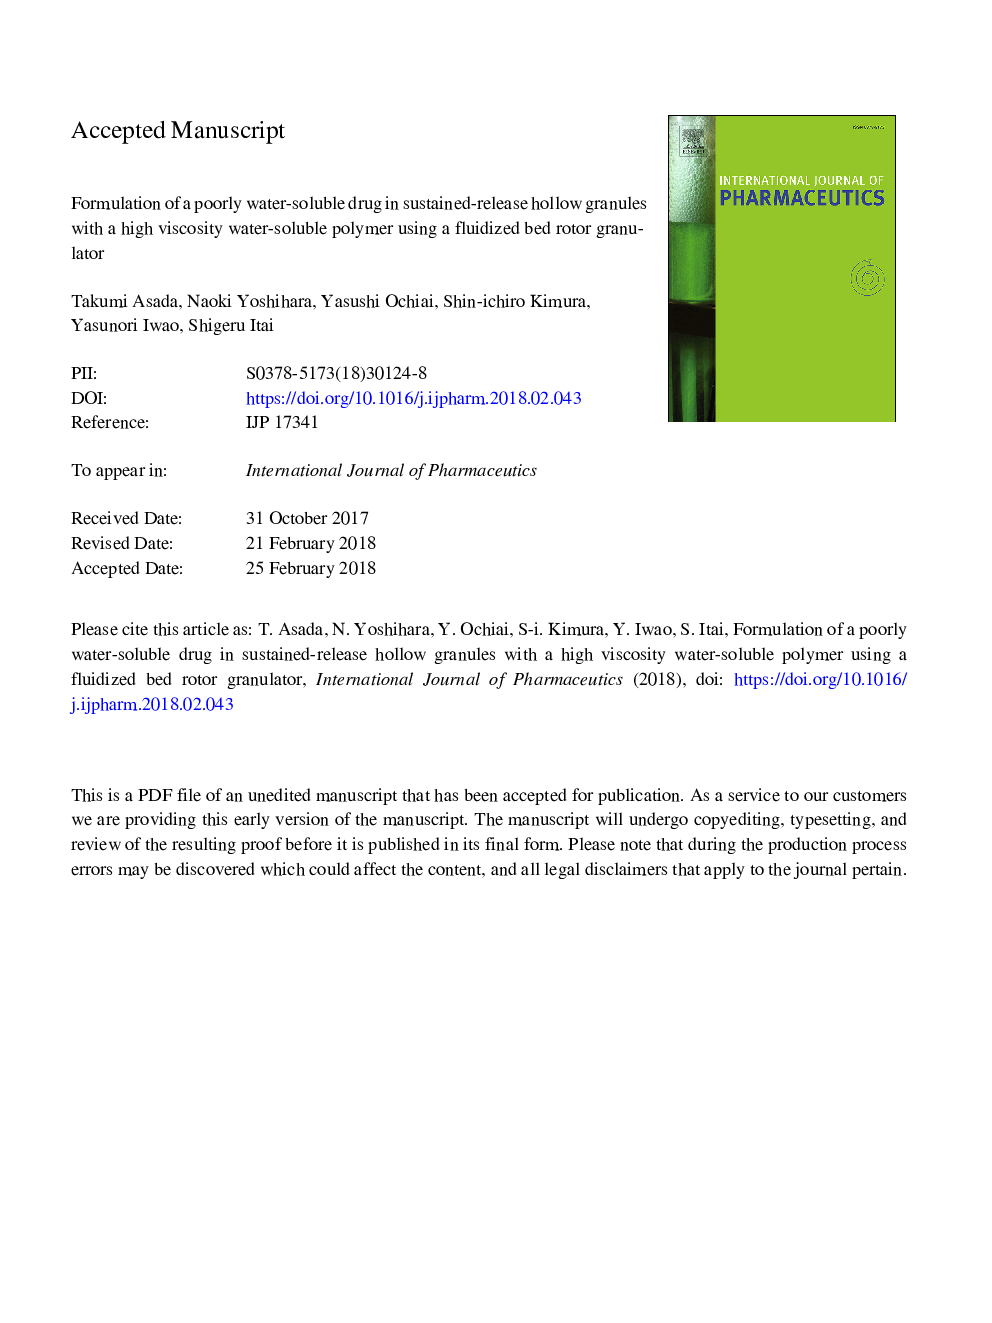 فرمولاسیون داروی محلول در آب باقیمانده در گرانول توخالی پایدار با وریدی محلول در آب با غلظت بالا با استفاده از گرانولاتور روتور سیال بستر 